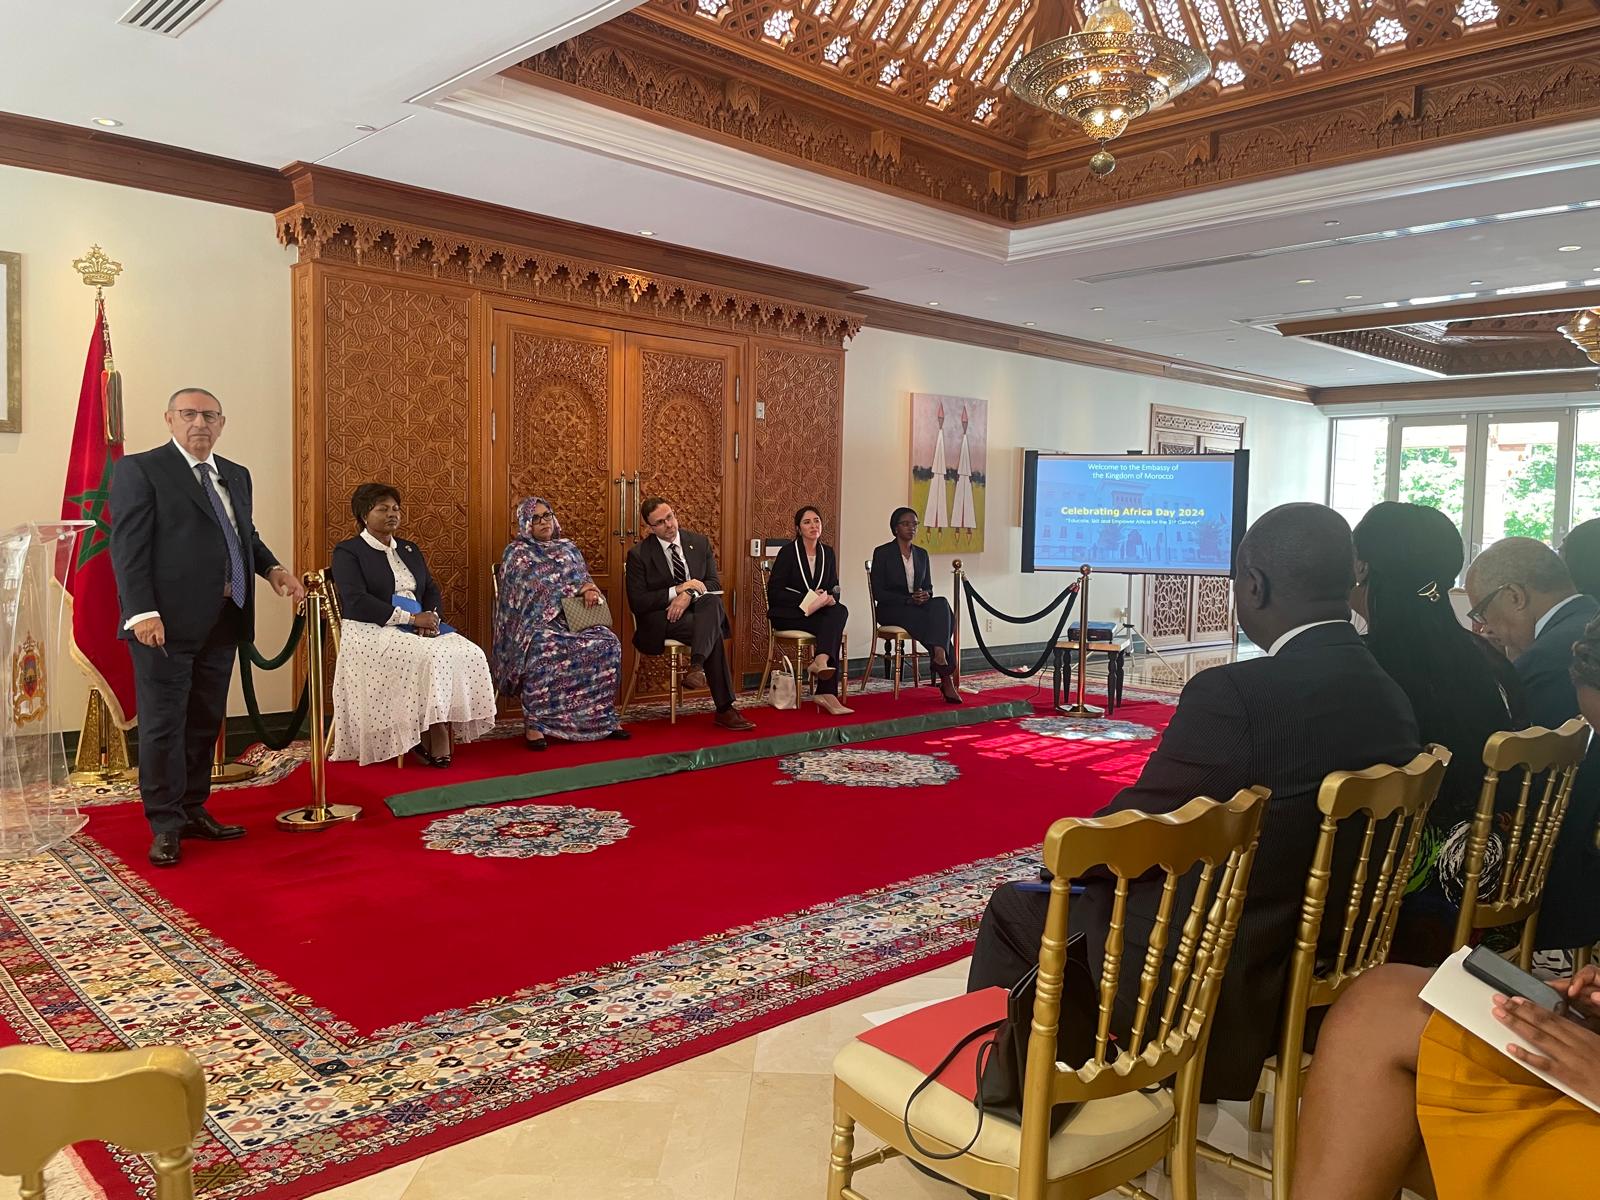 السفير المغربي يوسف العمراني يلقي كلمة افتتاحية بمناسبة يوم افريقيا في مقر السفارة المغربية في واشنطن 